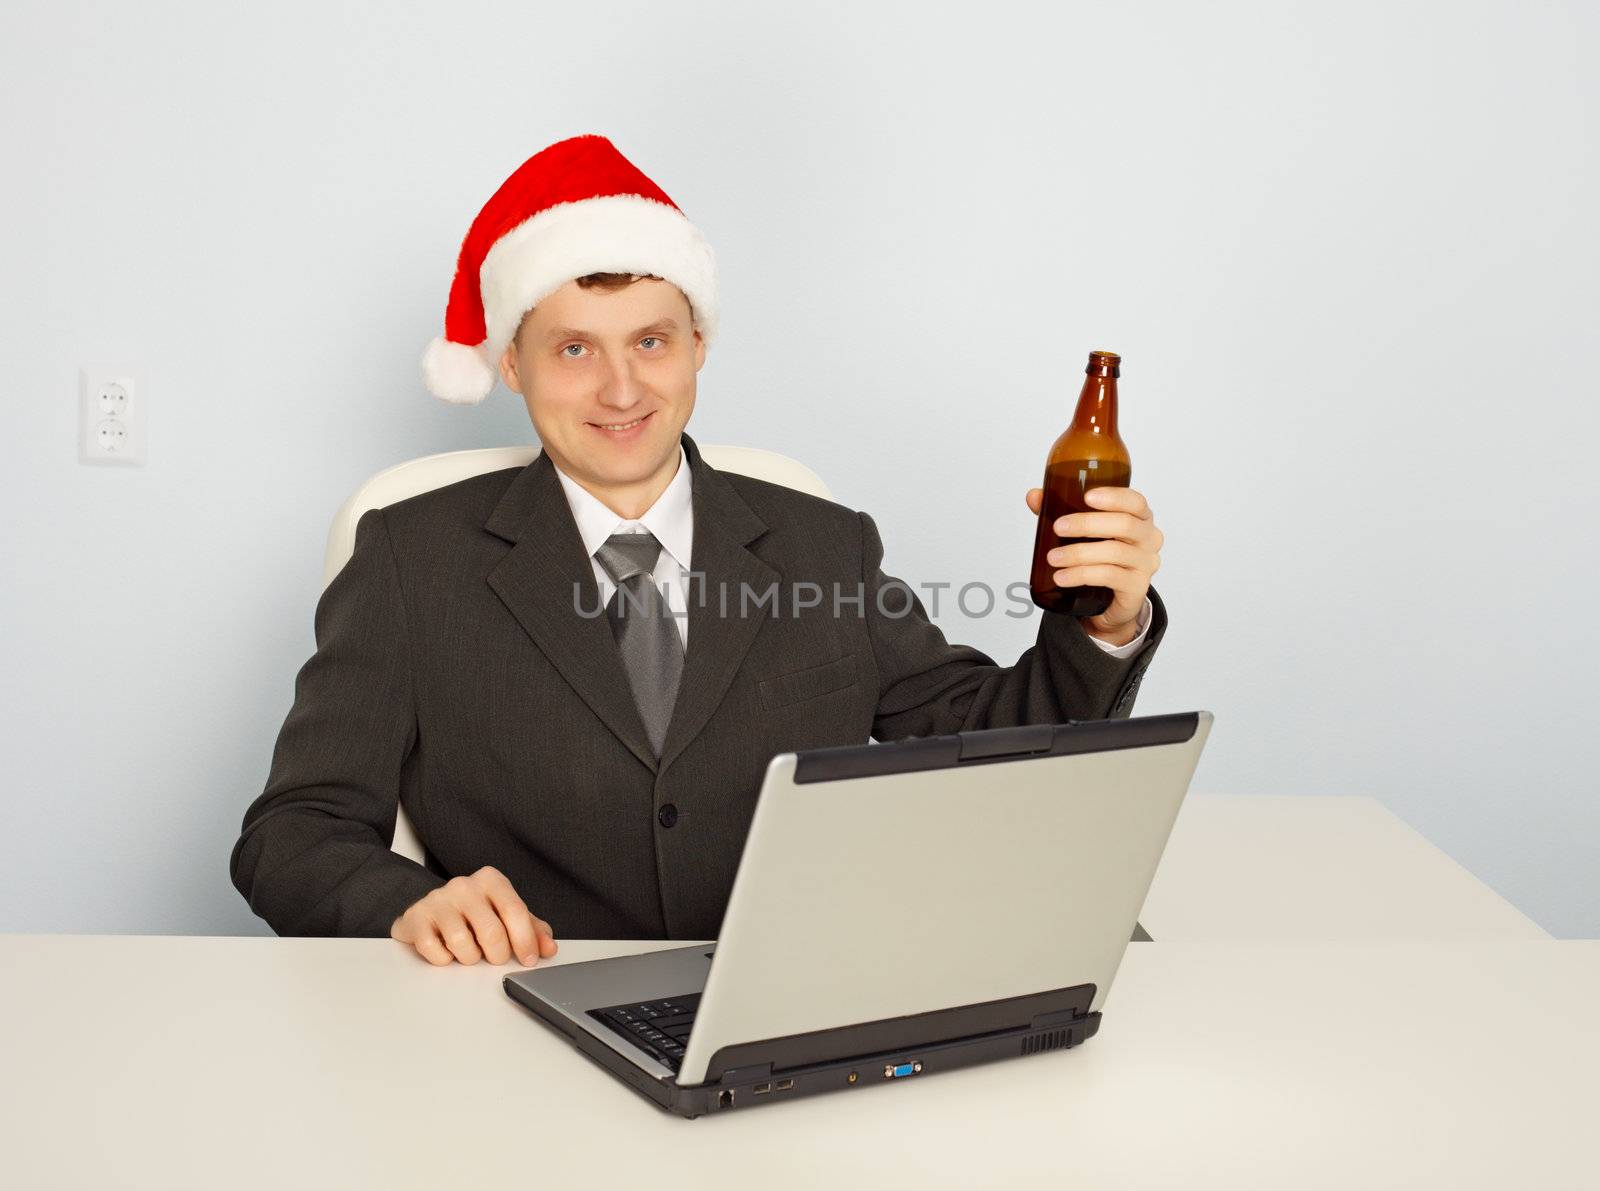 Office clerk begins to celebrate Christmas at work